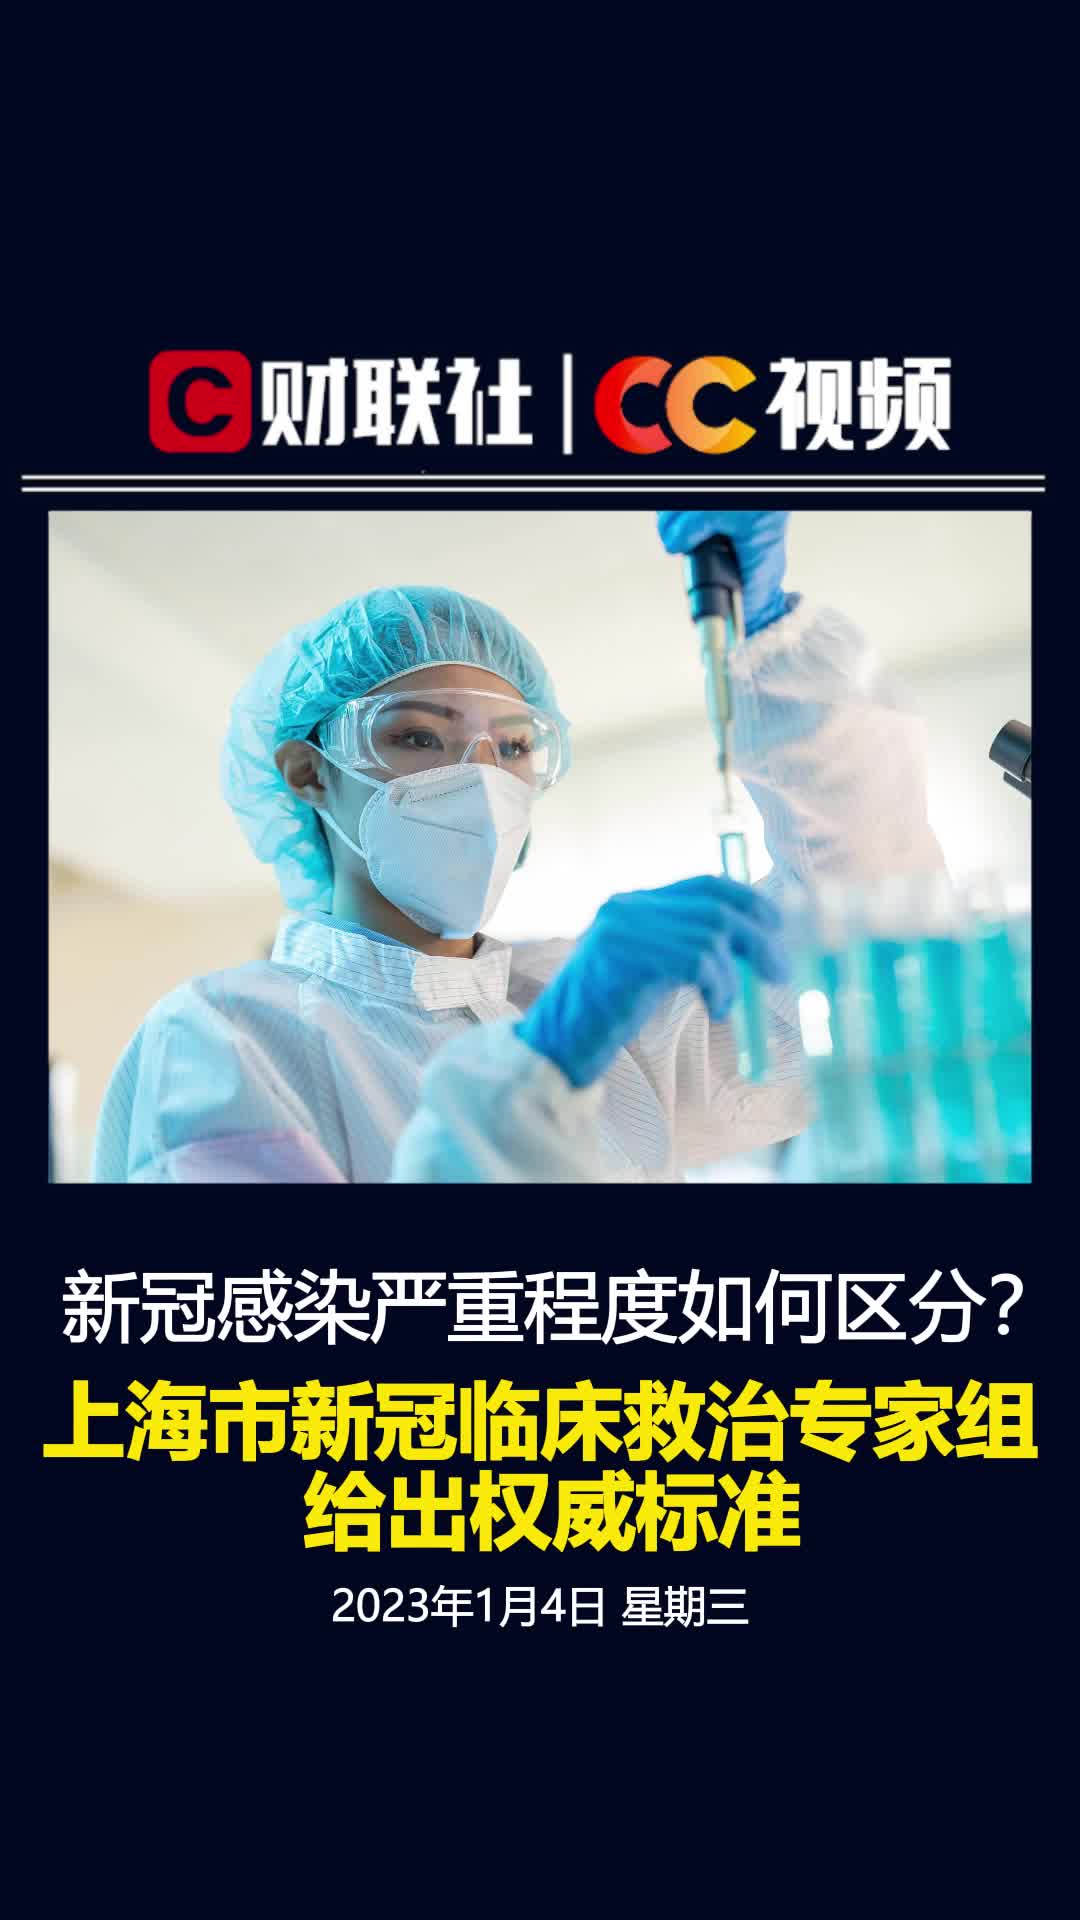 新冠感染严重程度如何区分？上海新冠临床救治专家组给出权威标准